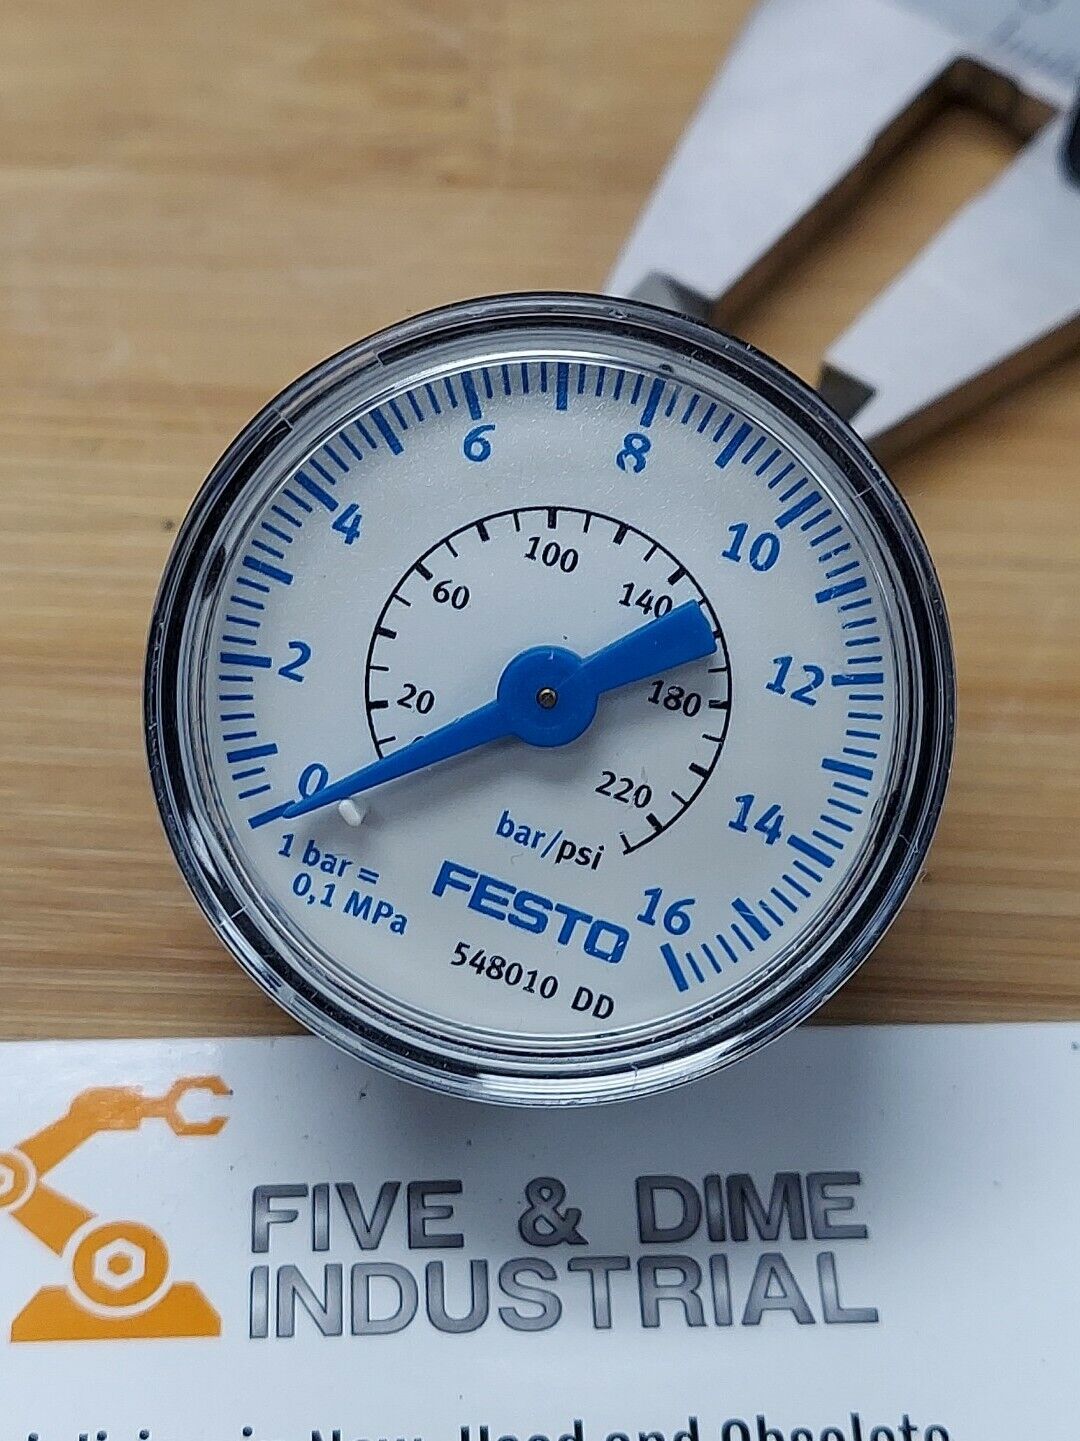 Festo 548010 Nanometer Pressure Gauge 16 Bar  230 Psi (YE125)